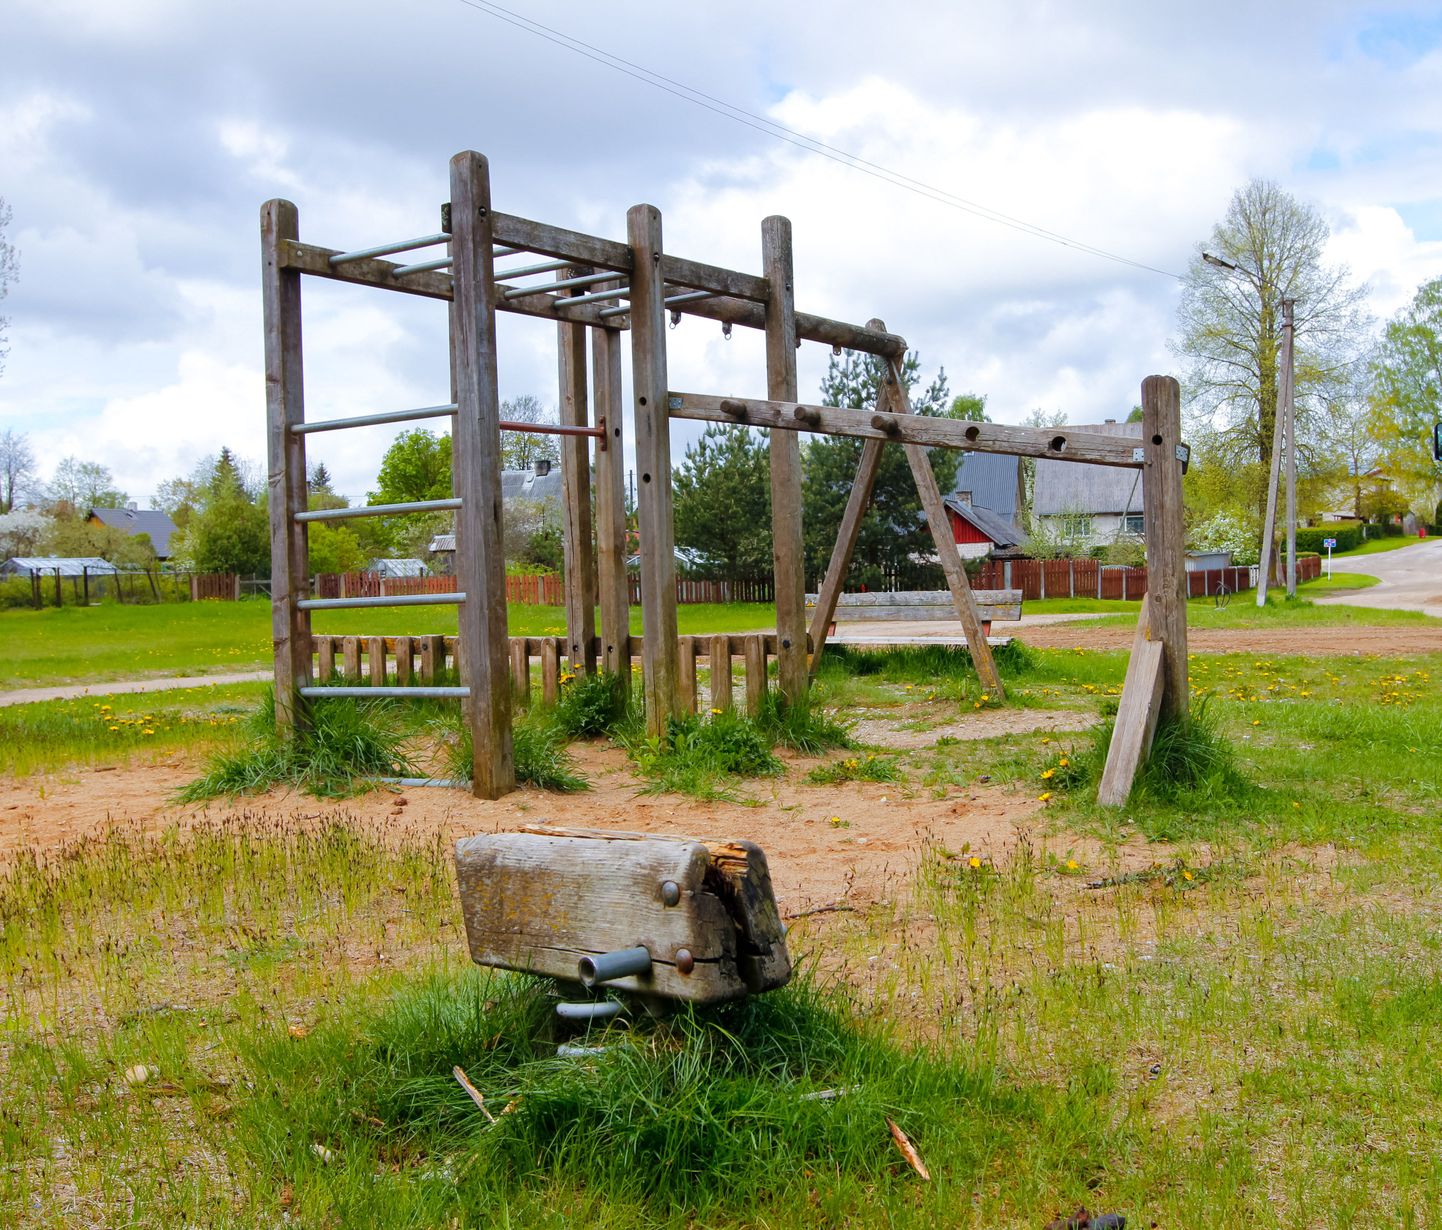 Kõige halvemas seisus on hetkel Valgas Peebu pargis olev vana puidust mänguväljak, kuhu lapsi mängima saata ei tohiks. Juba sel nädalal alustatakse väljaku lammutamisega.